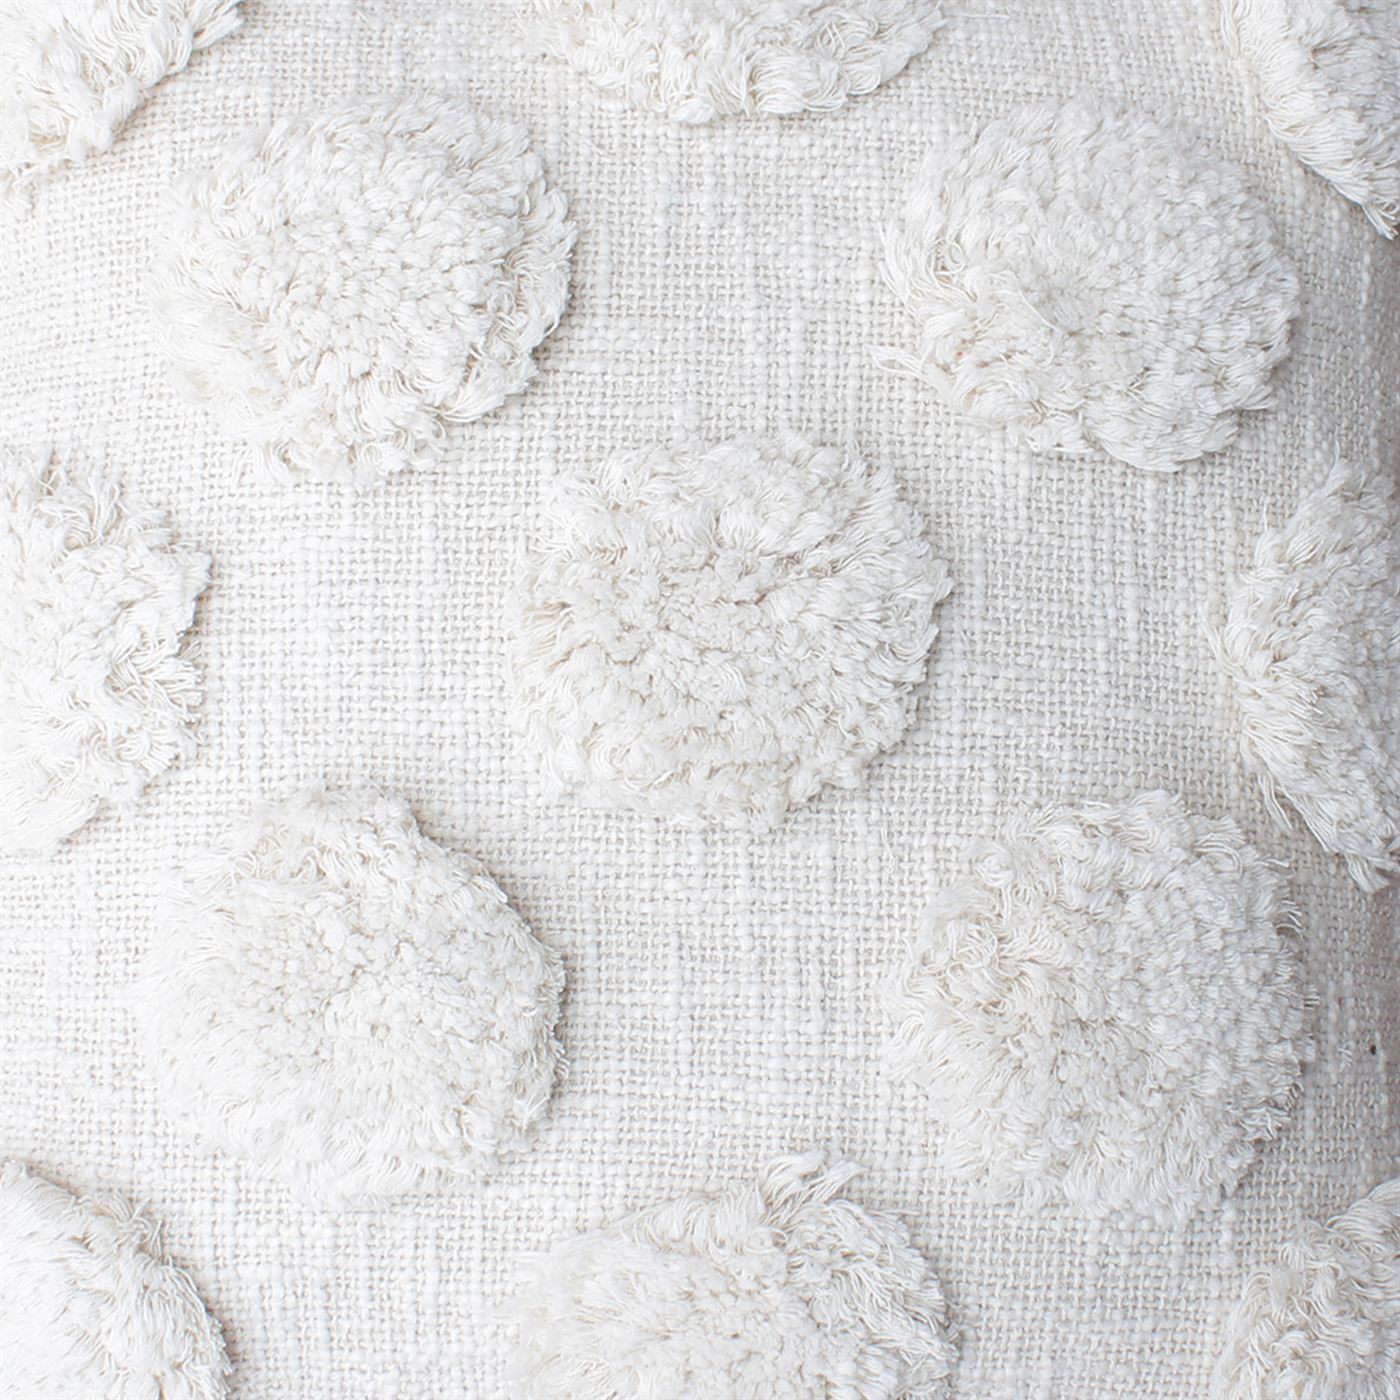 Pilares Cushion, Cotton, Natural White, Bm Fn, All Cut